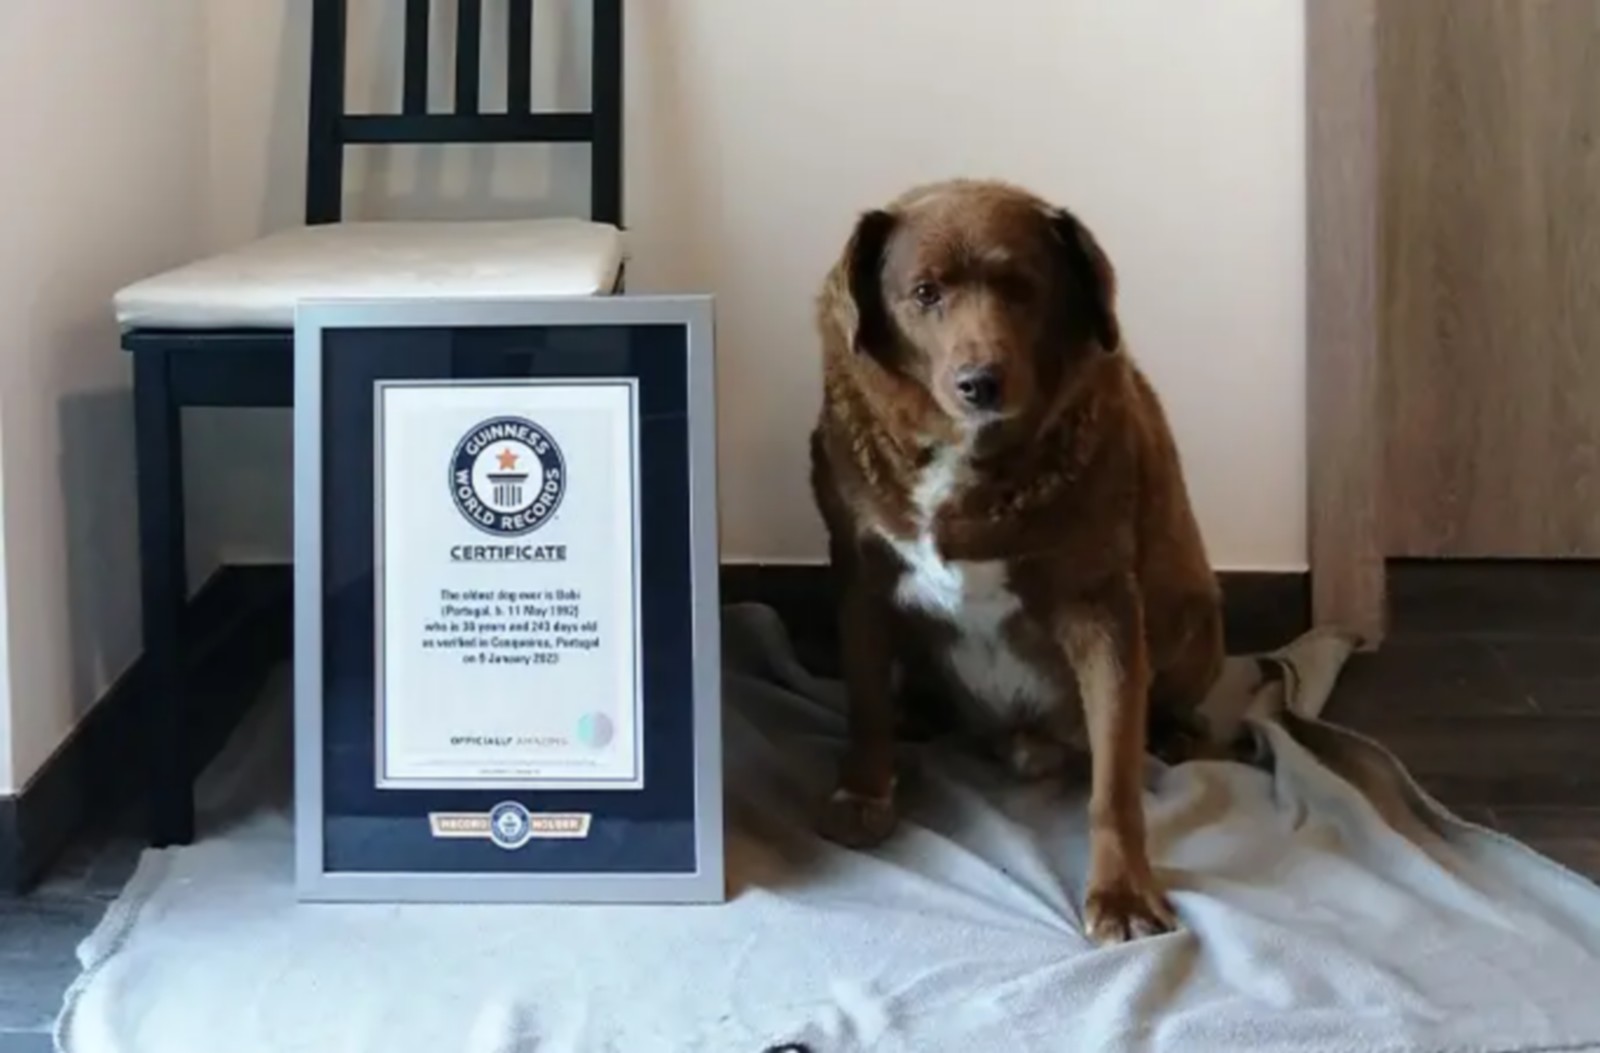 Πέθανε σε ηλικία 31 ετών ο Μπόμπι, ο γηραιότερος σκύλος στον κόσμο